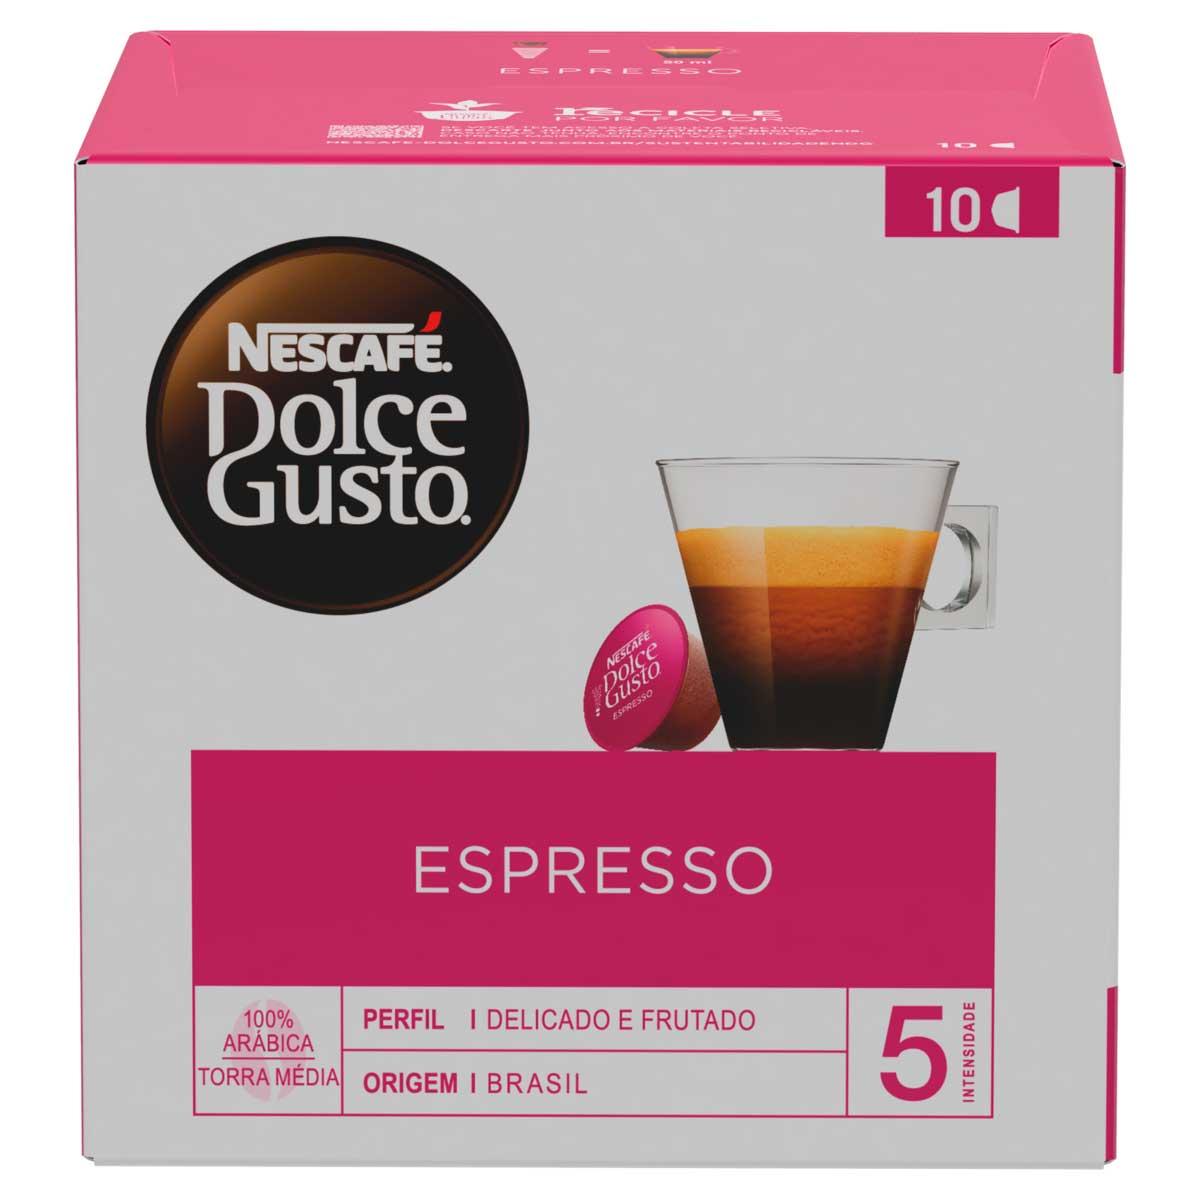 4 Caixas de Café em Cápsula Nescafé Dolce Gusto Espresso - 10 Cápsulas Cada